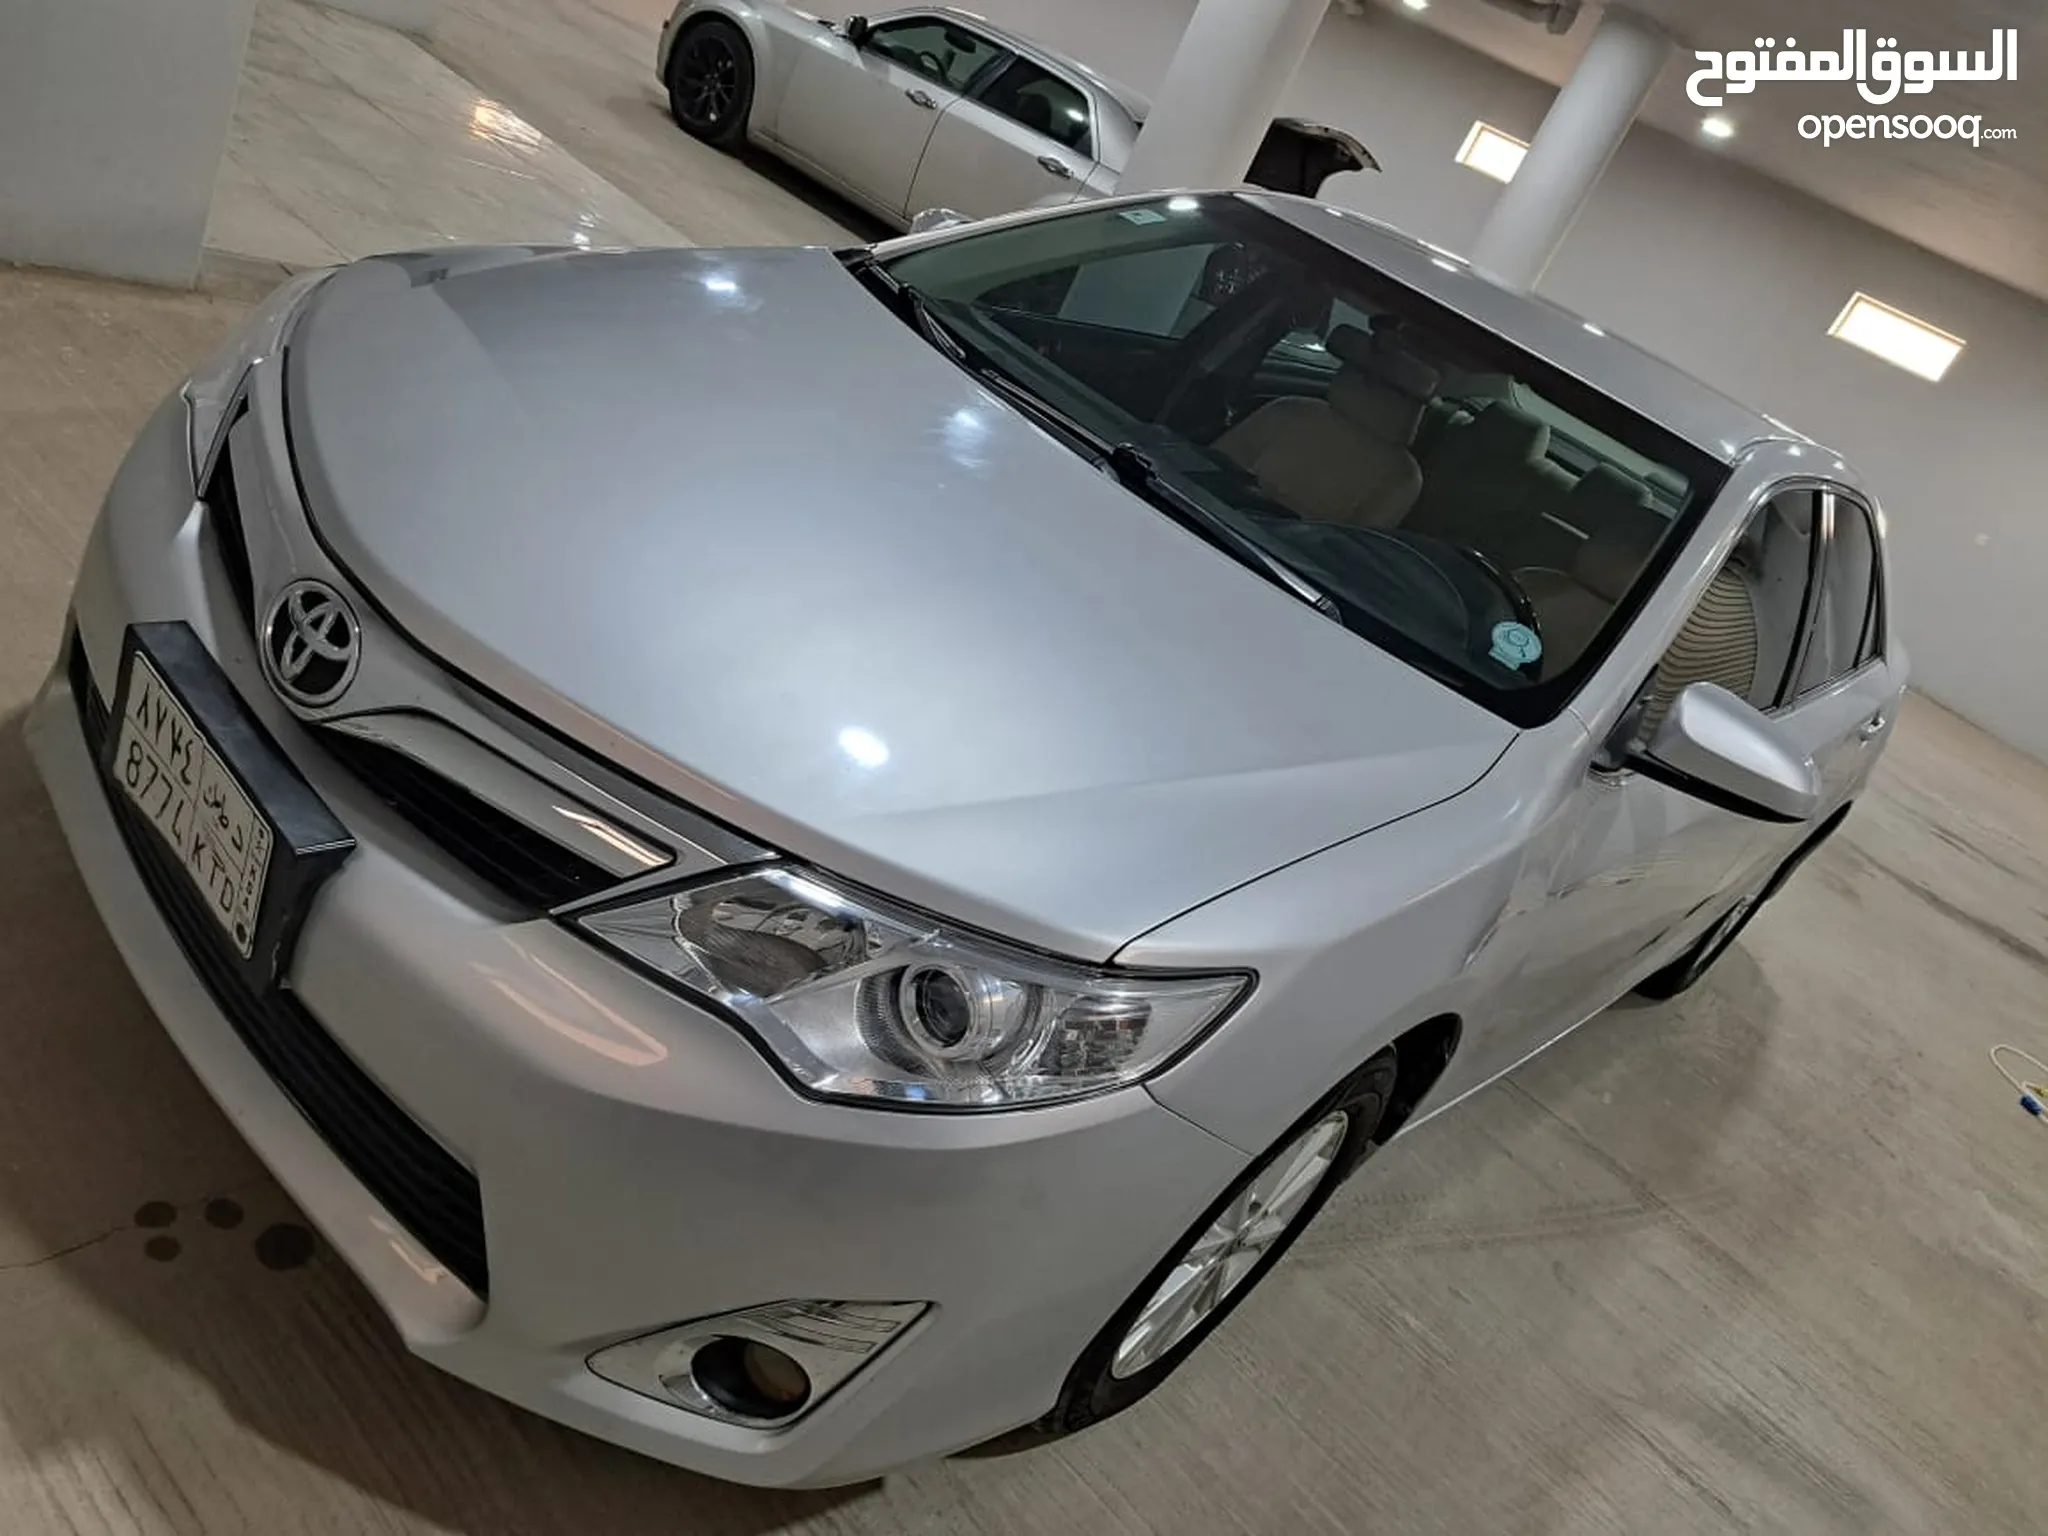 سيارات تويوتا للبيع في جدة - عروض تويوتا : جديدة ومستعملة : أفضل الأسعار |  السوق المفتوح